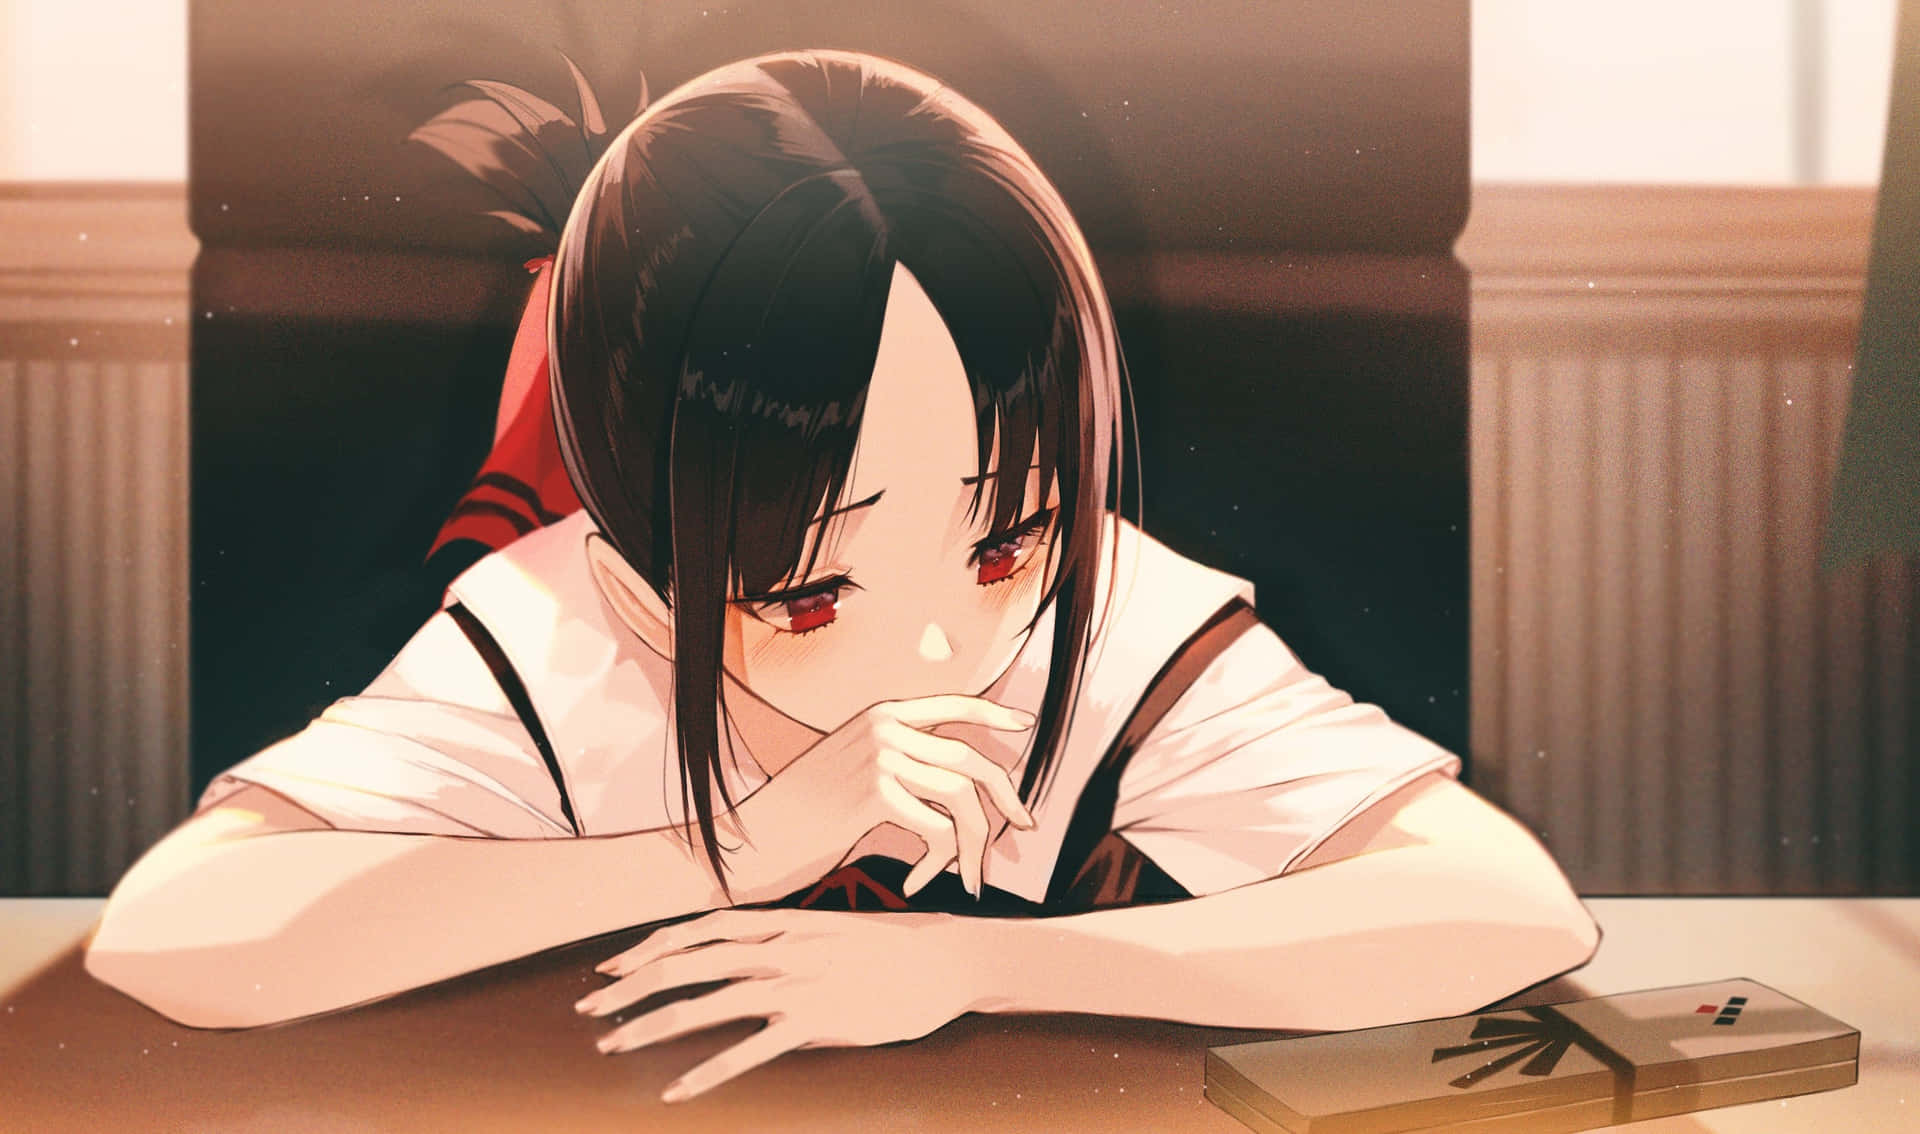 Embarrassed Anime Girl Blushing Wallpaper